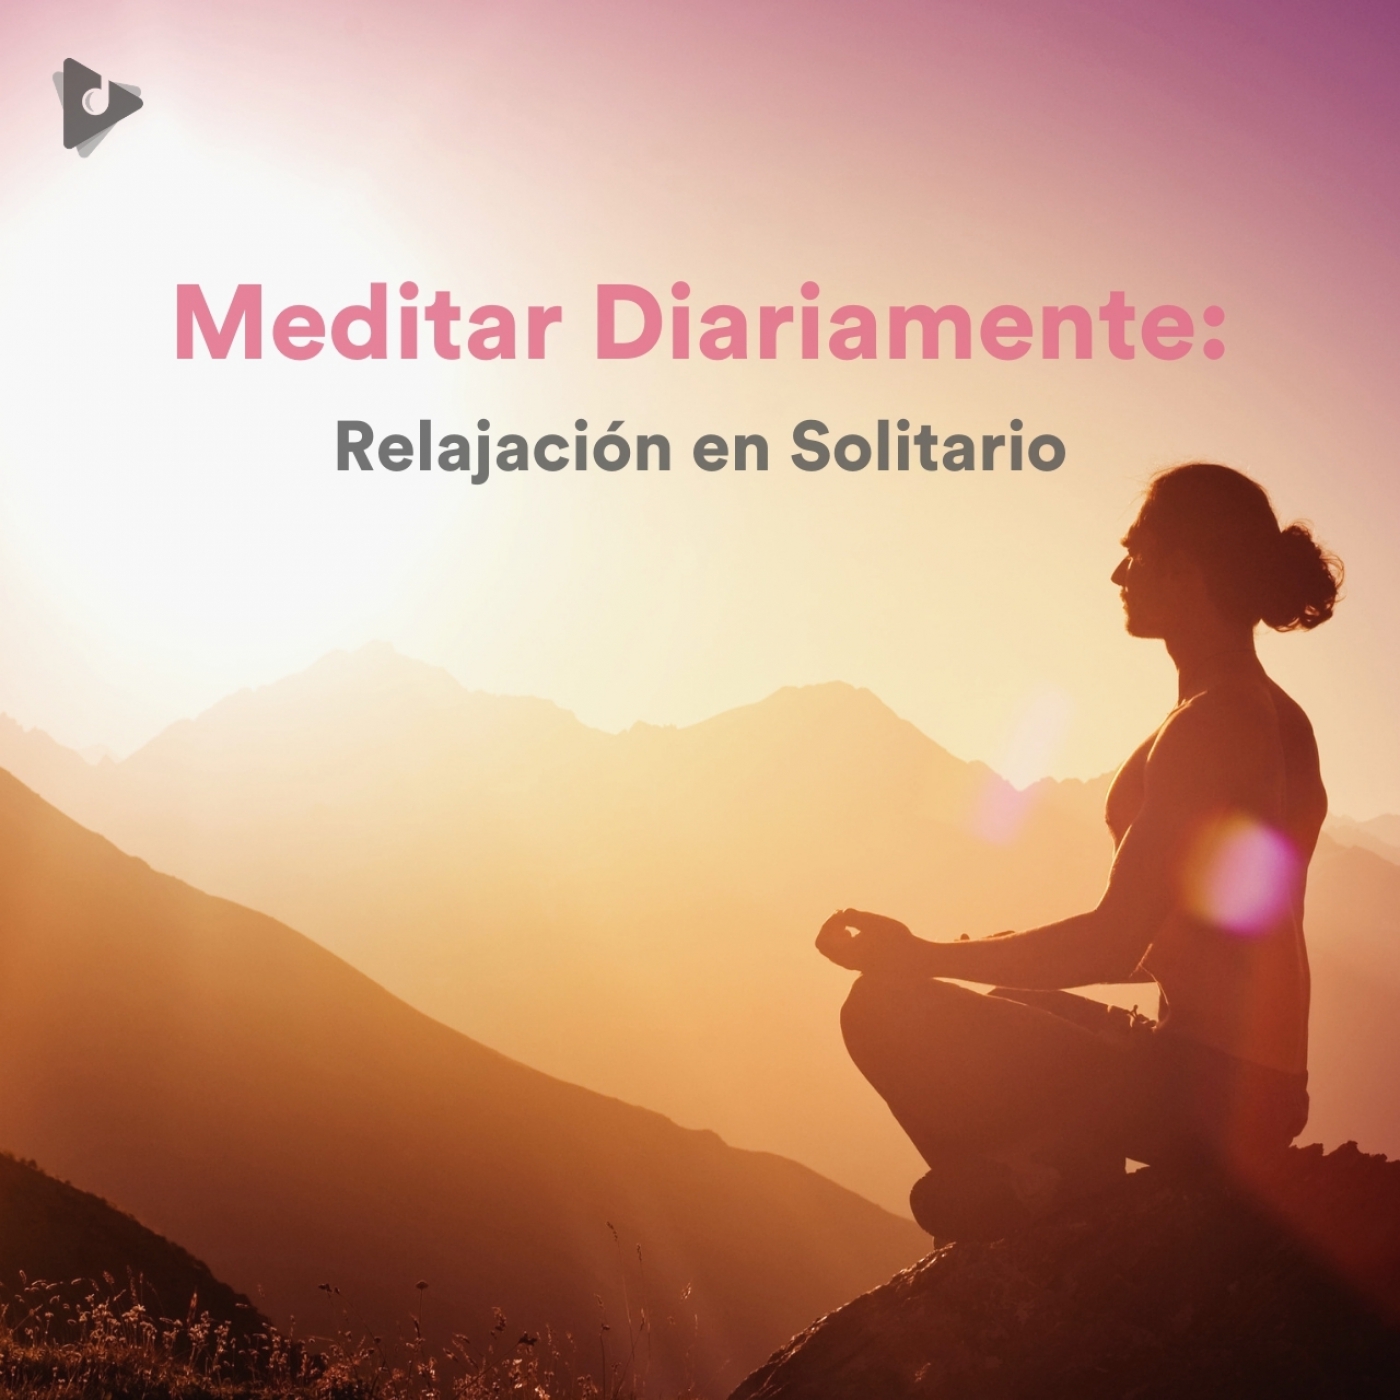 Meditar Diariamente: Relajación en Solitario